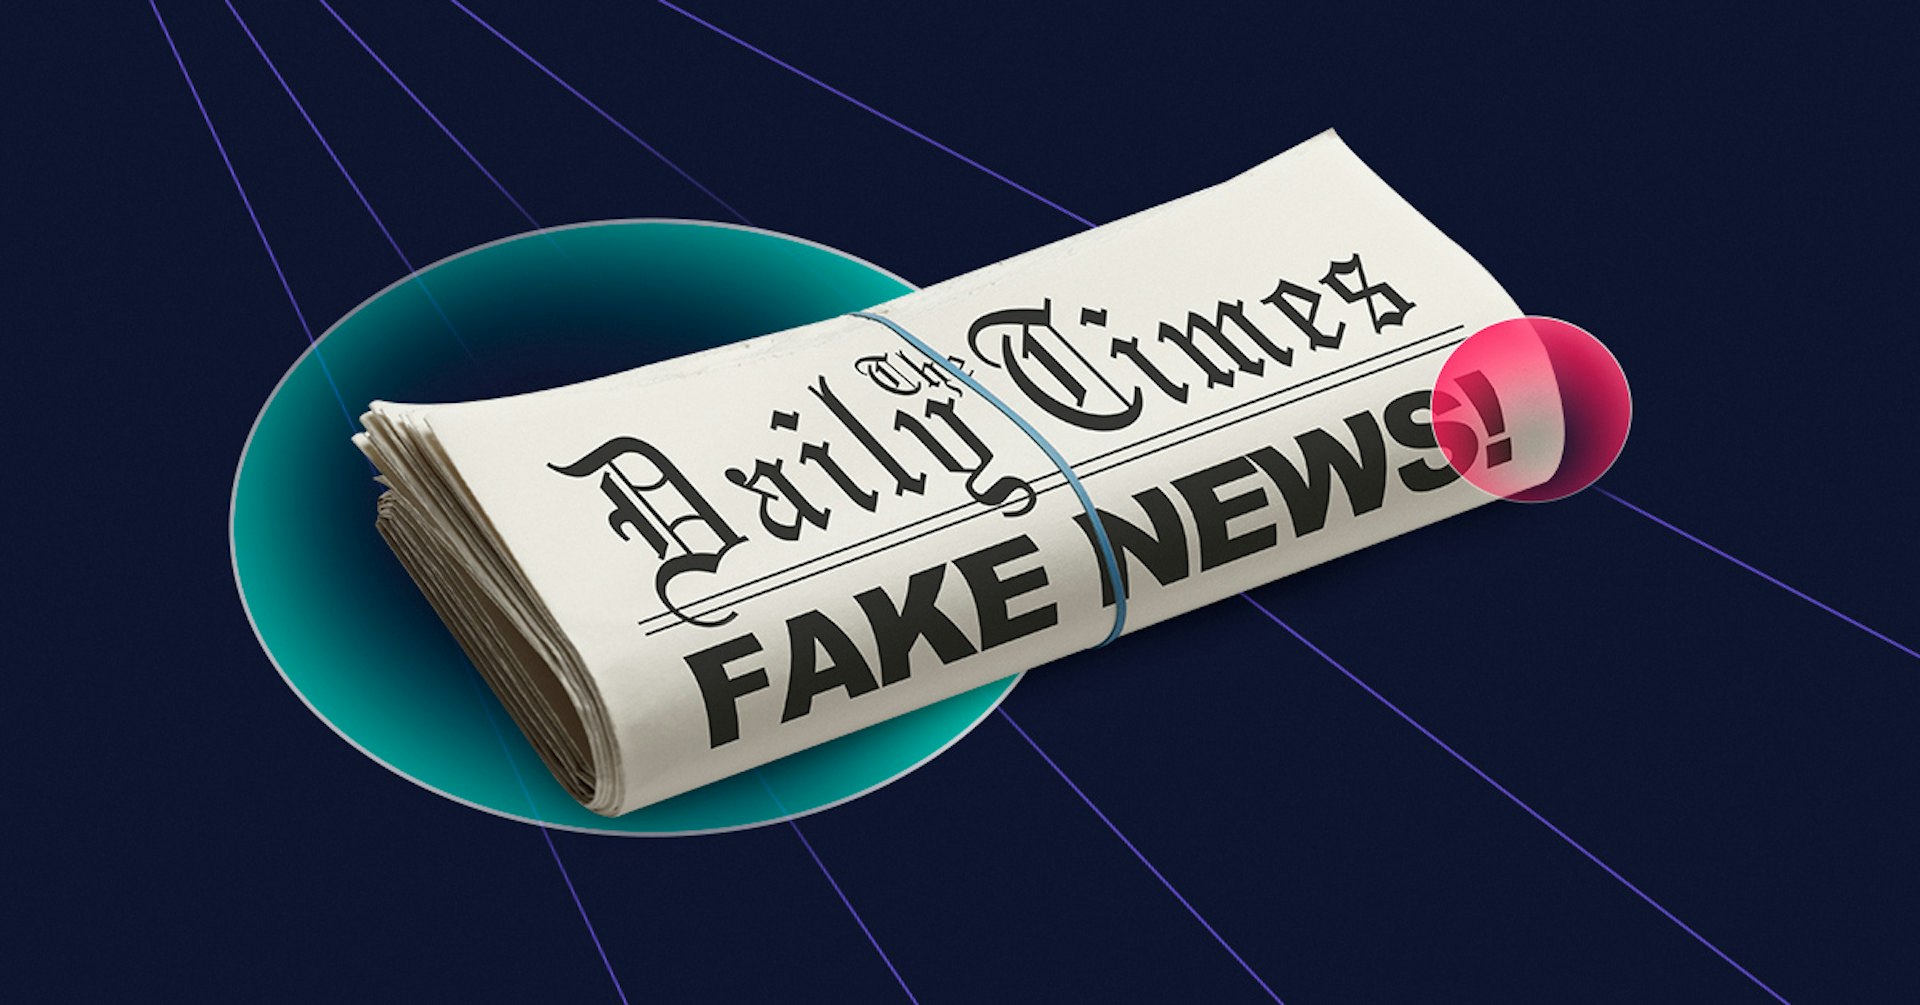 ¿Qué son los Fakes News? ¡No te dejes manipular y evita desinformar!